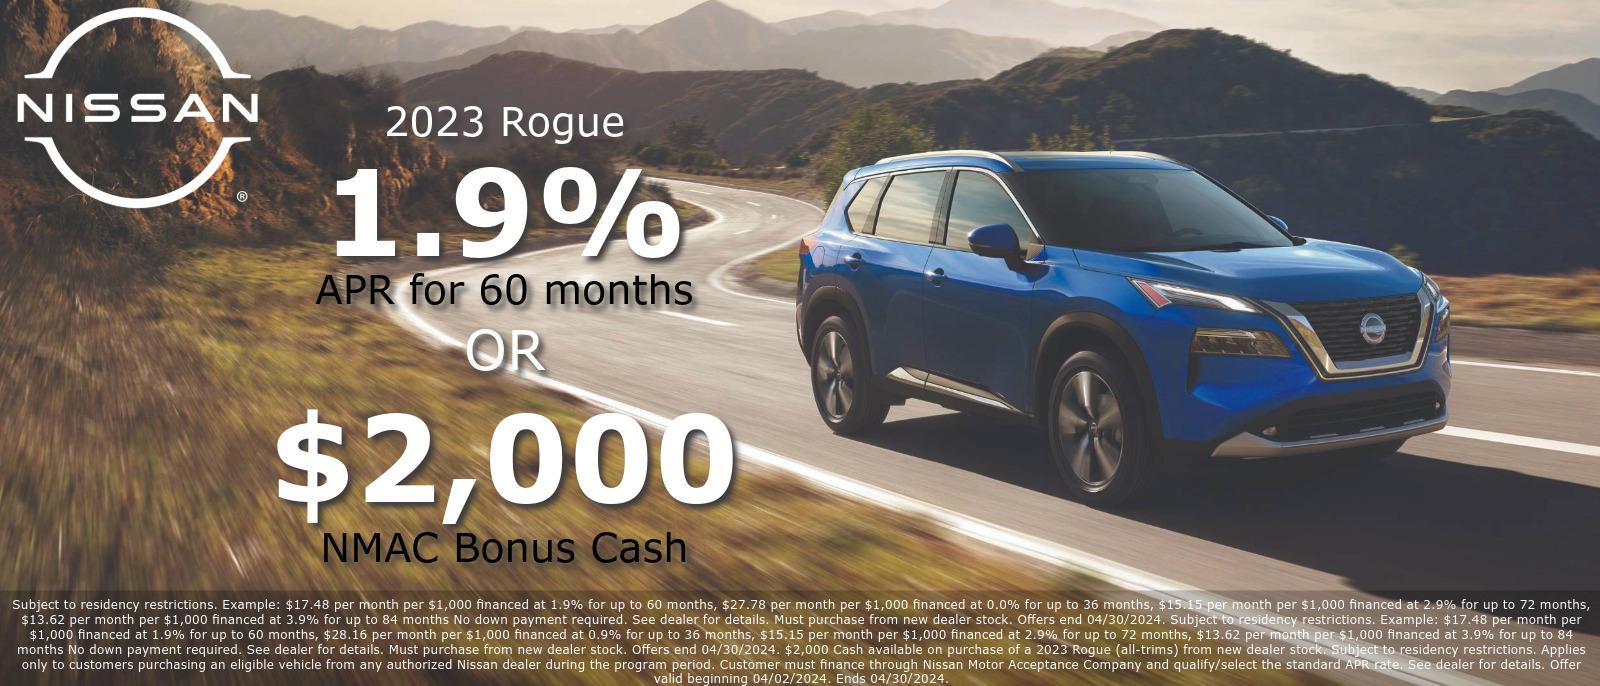 2023 Rogue, 1.9% APR for 60 months or $2,000 NMAC Bonus Cash